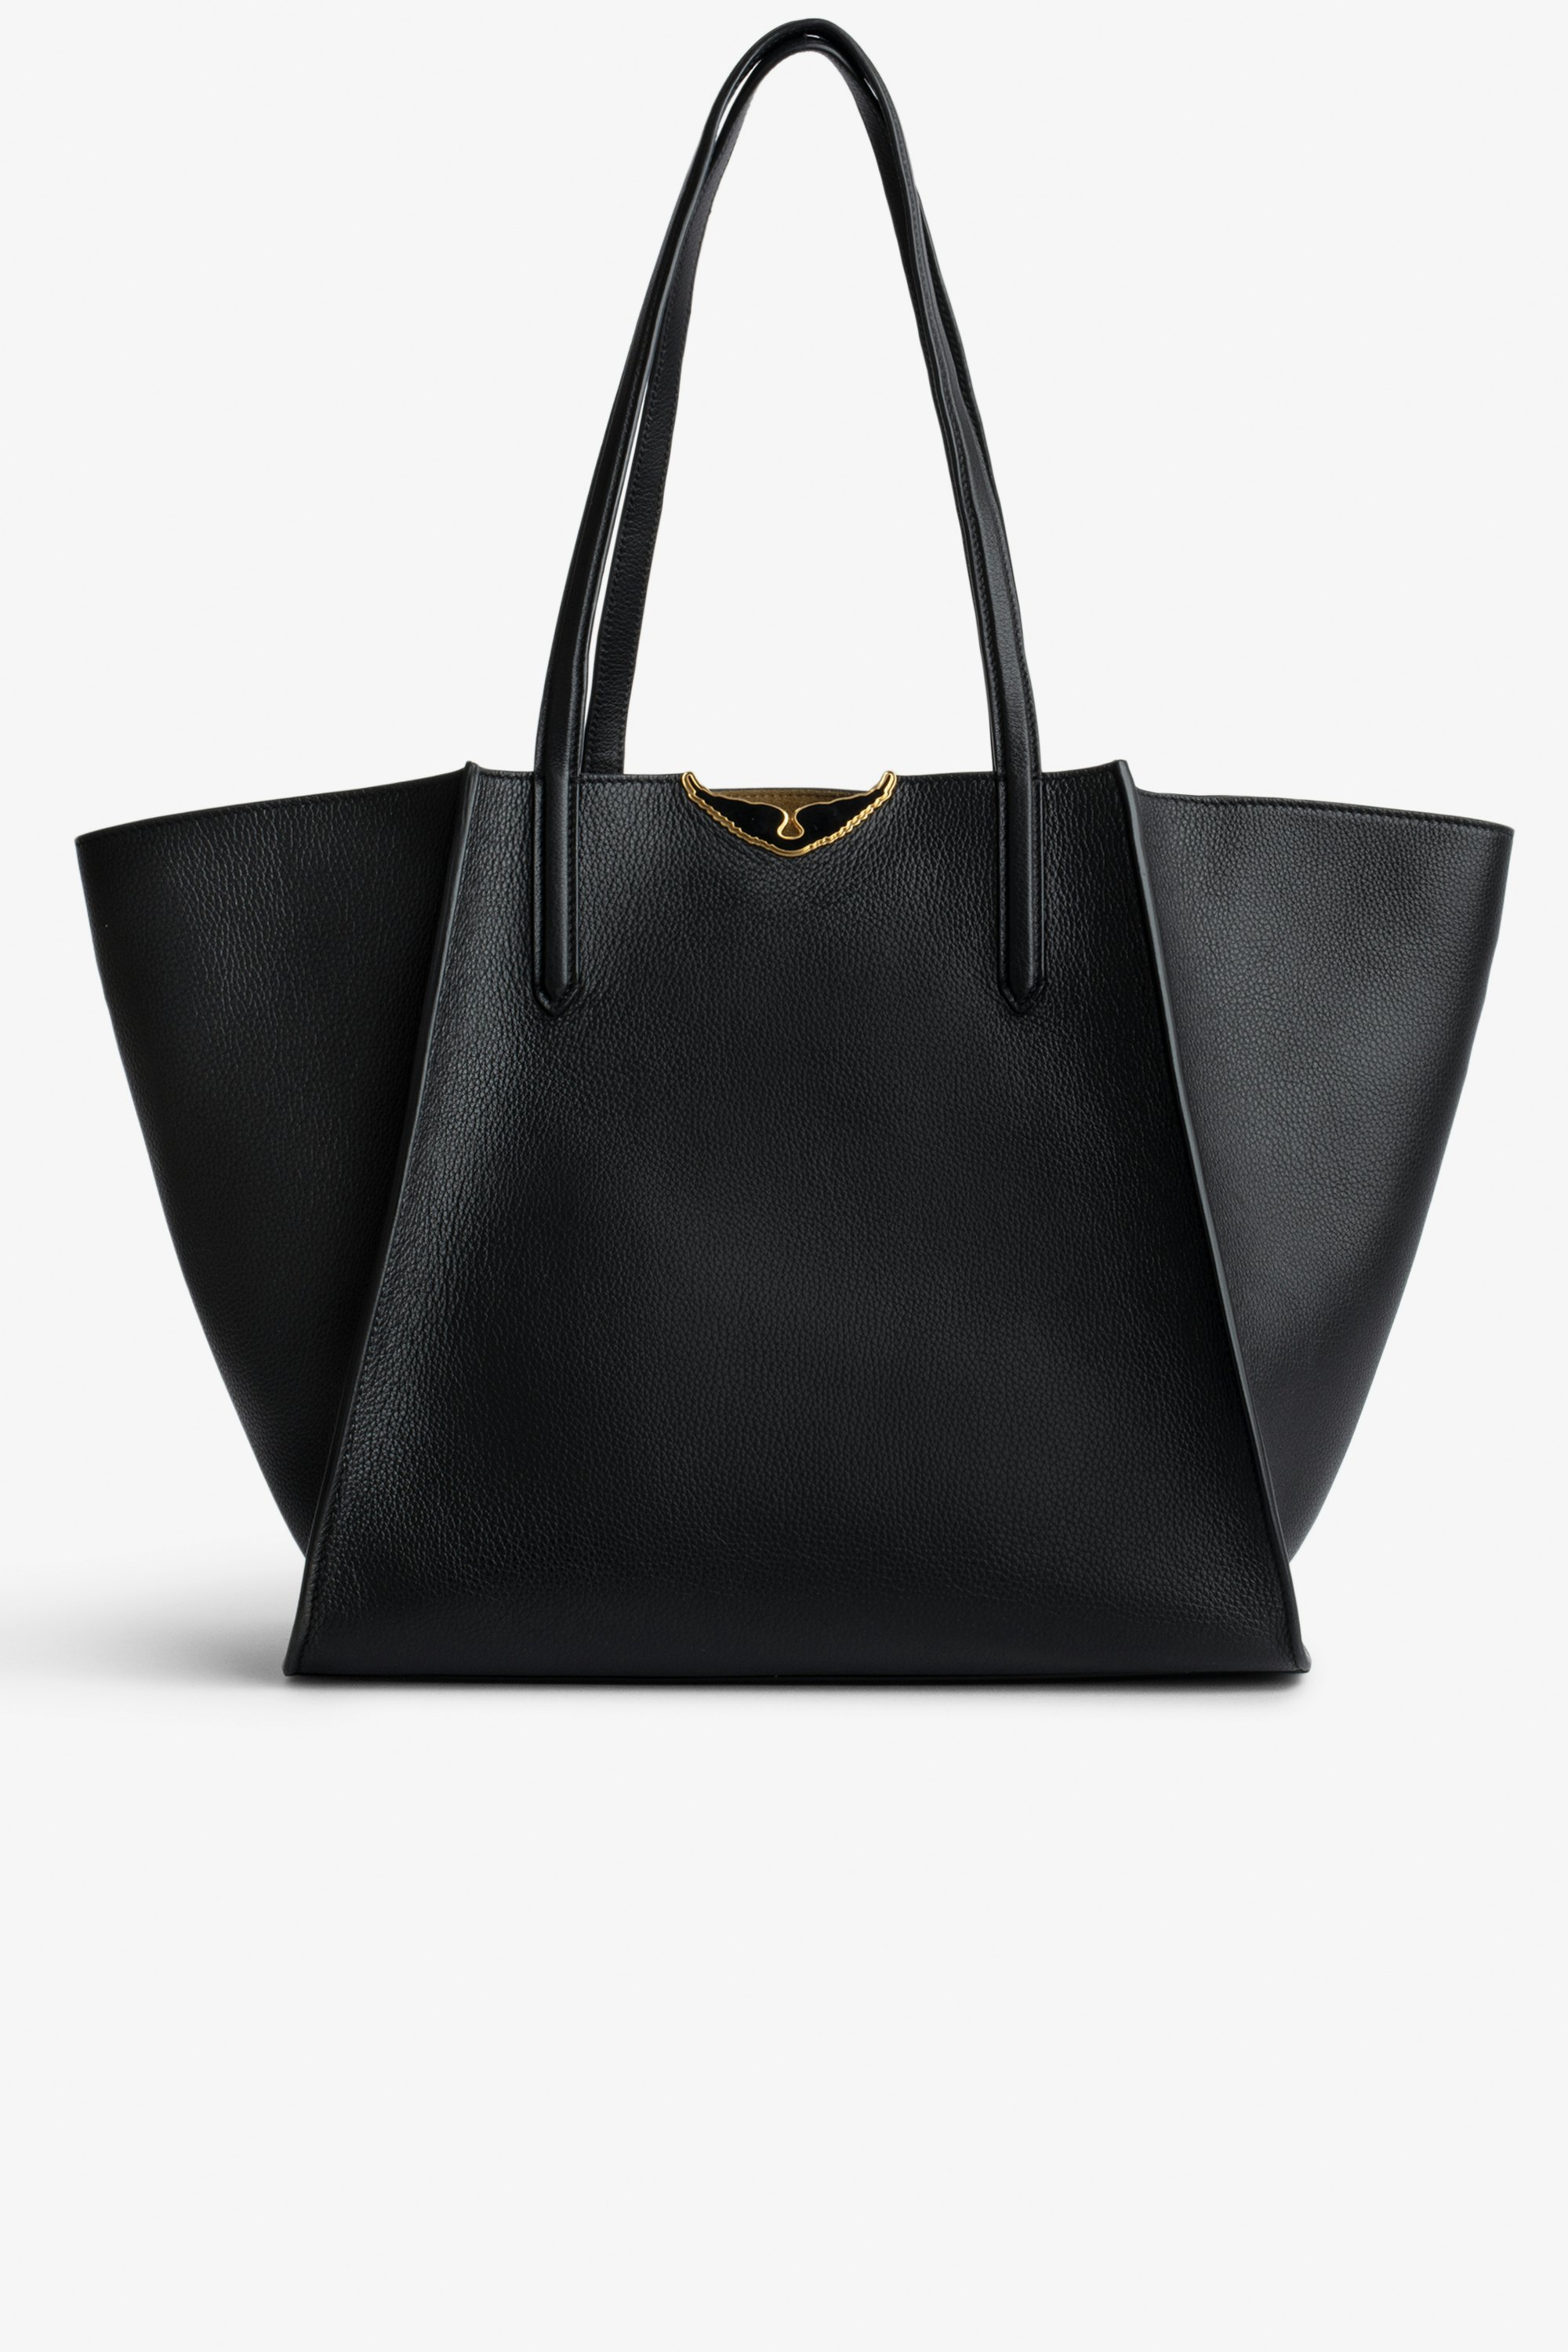 Tasche Le Borderline - Damen-Shopper zum Wenden aus schwarzem, genarbtem Leder und khakifarbenem Veloursleder mit schwarz lackierten Flügeln.